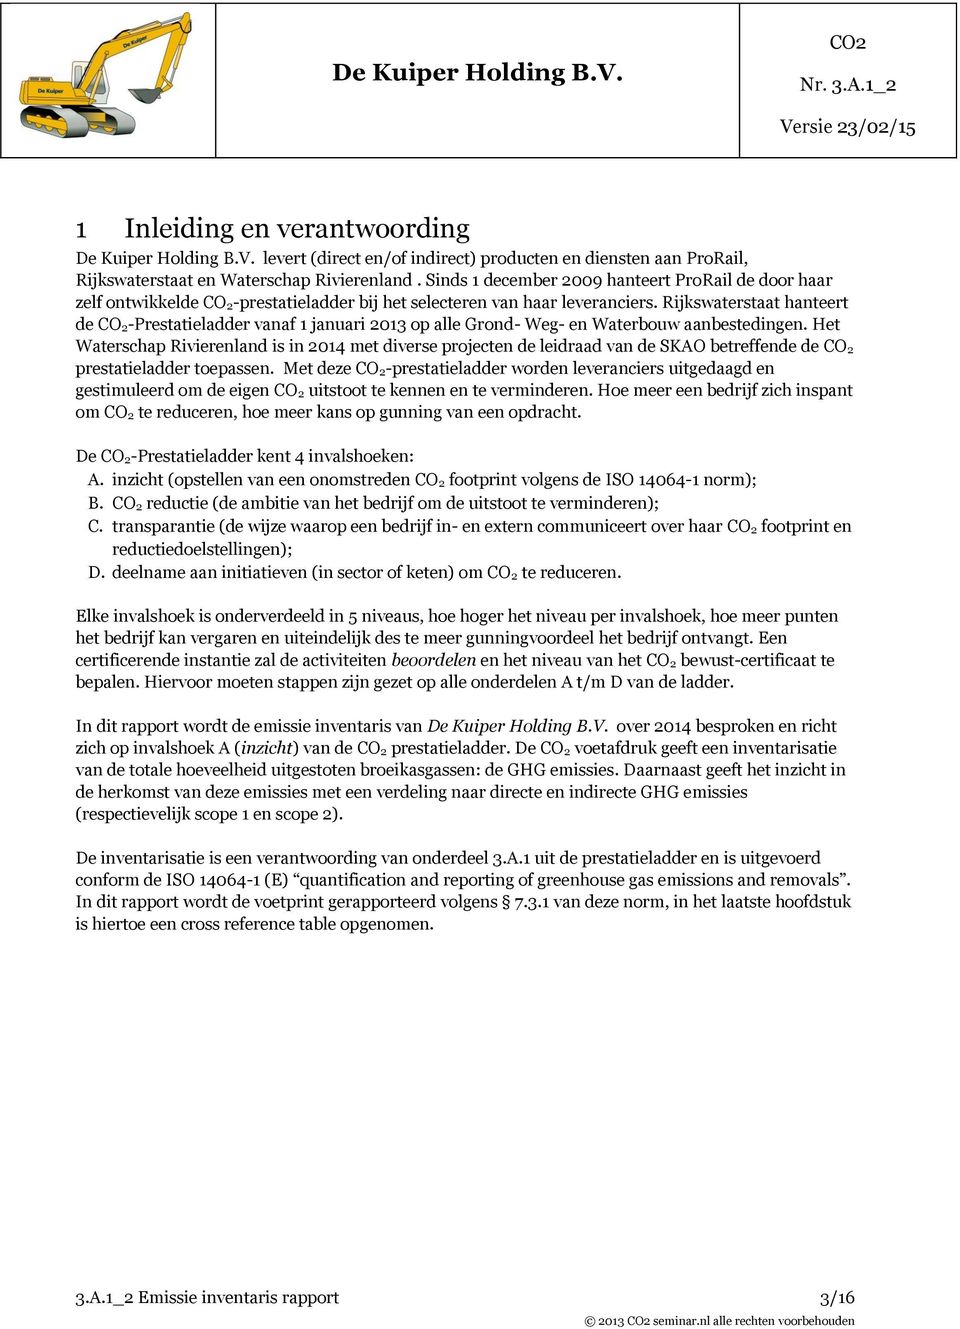 Rijkswaterstaat hanteert de CO 2-Prestatieladder vanaf 1 januari 2013 op alle Grond- Weg- en Waterbouw aanbestedingen.